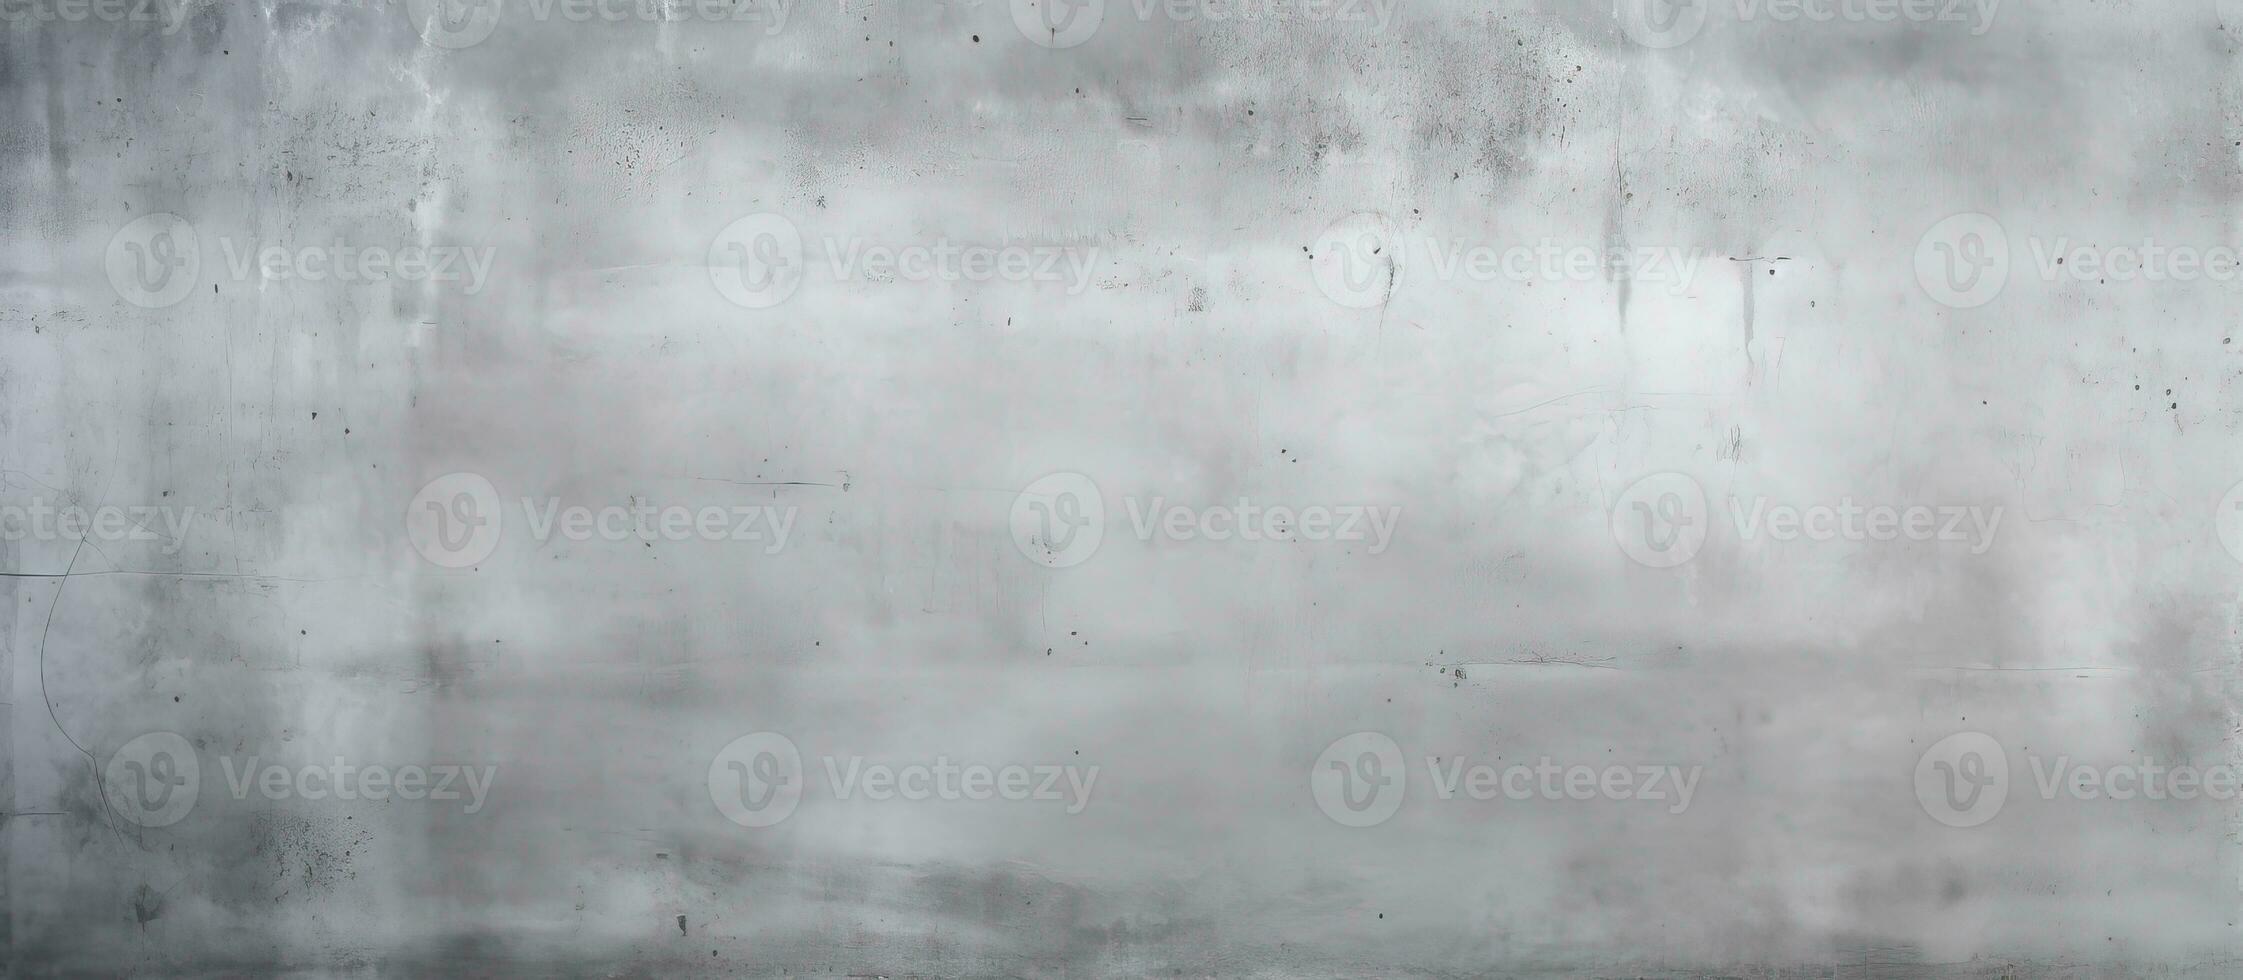 abstrato superfície fundo usando concreto gesso textura para loft estilo parede ou chão polimento foto